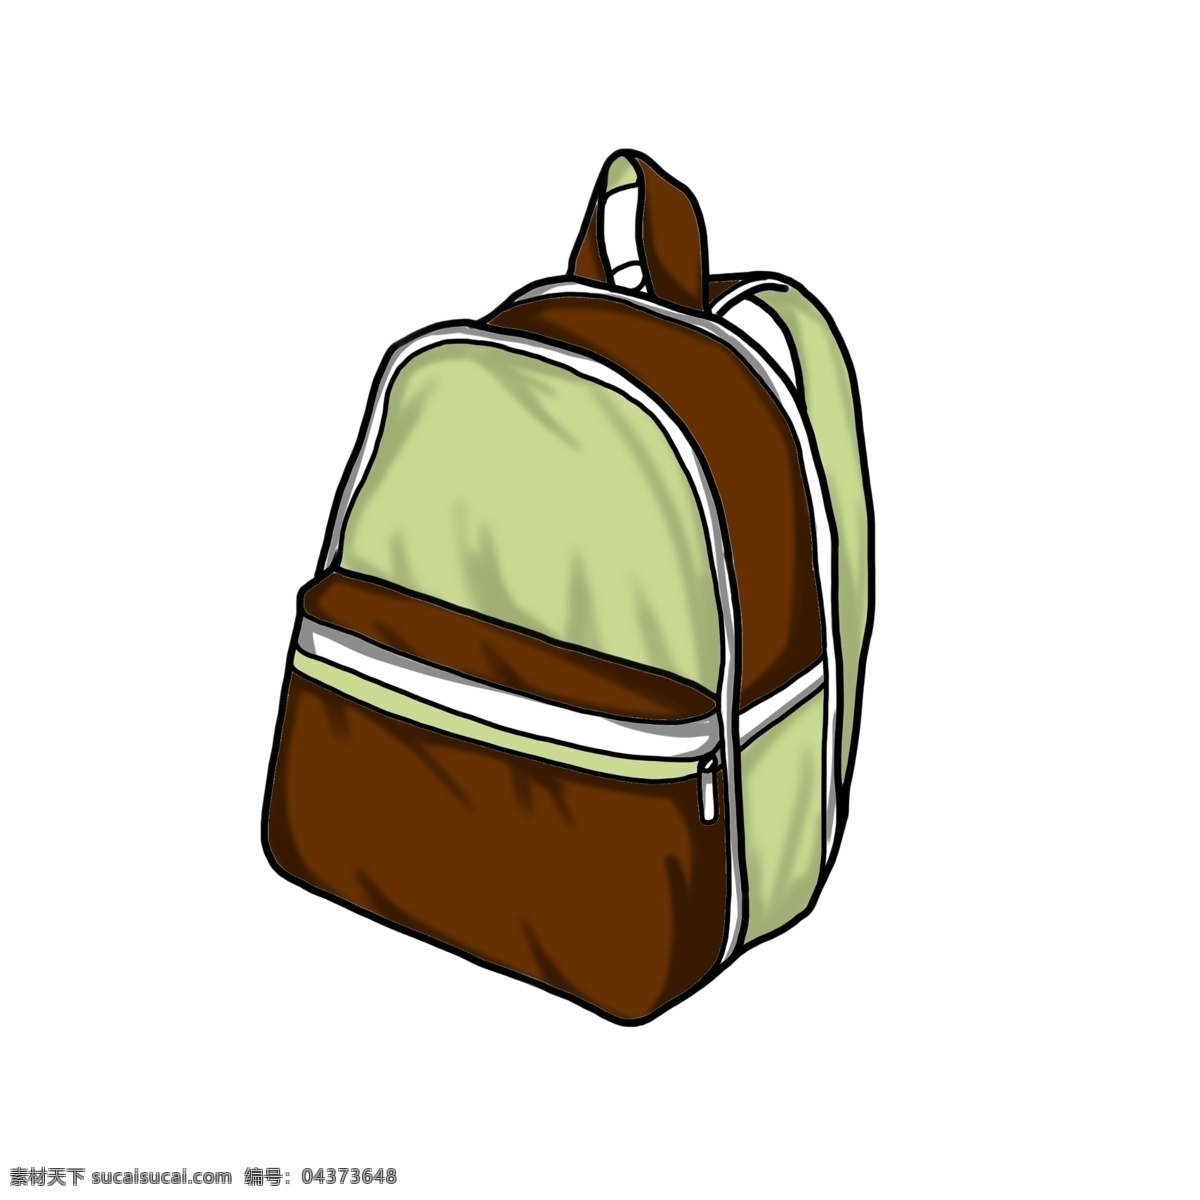 手绘 棕绿色 背包 插画 学生包 书包 旅行双肩包 旅游包 行李包 双肩包 棕绿色背包 户外爬山装备